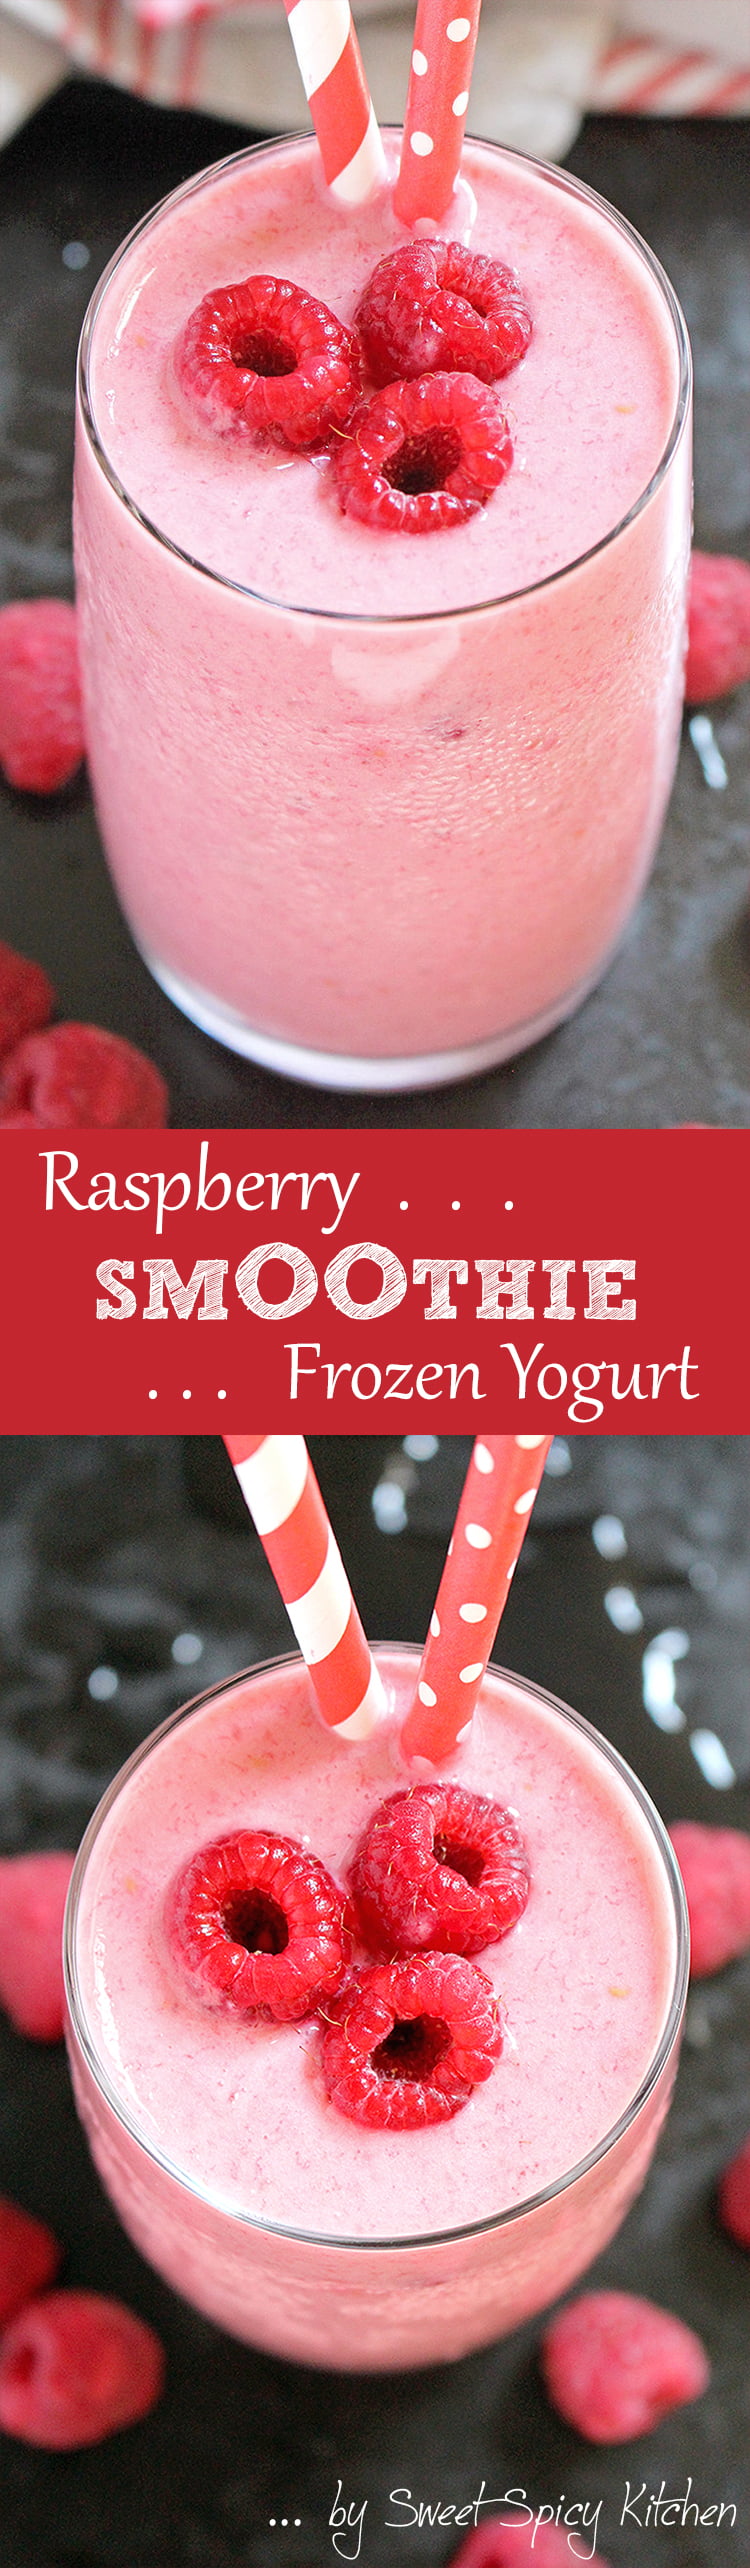 Untitled-1 Raspberry Frozen Yogurt Smoothie